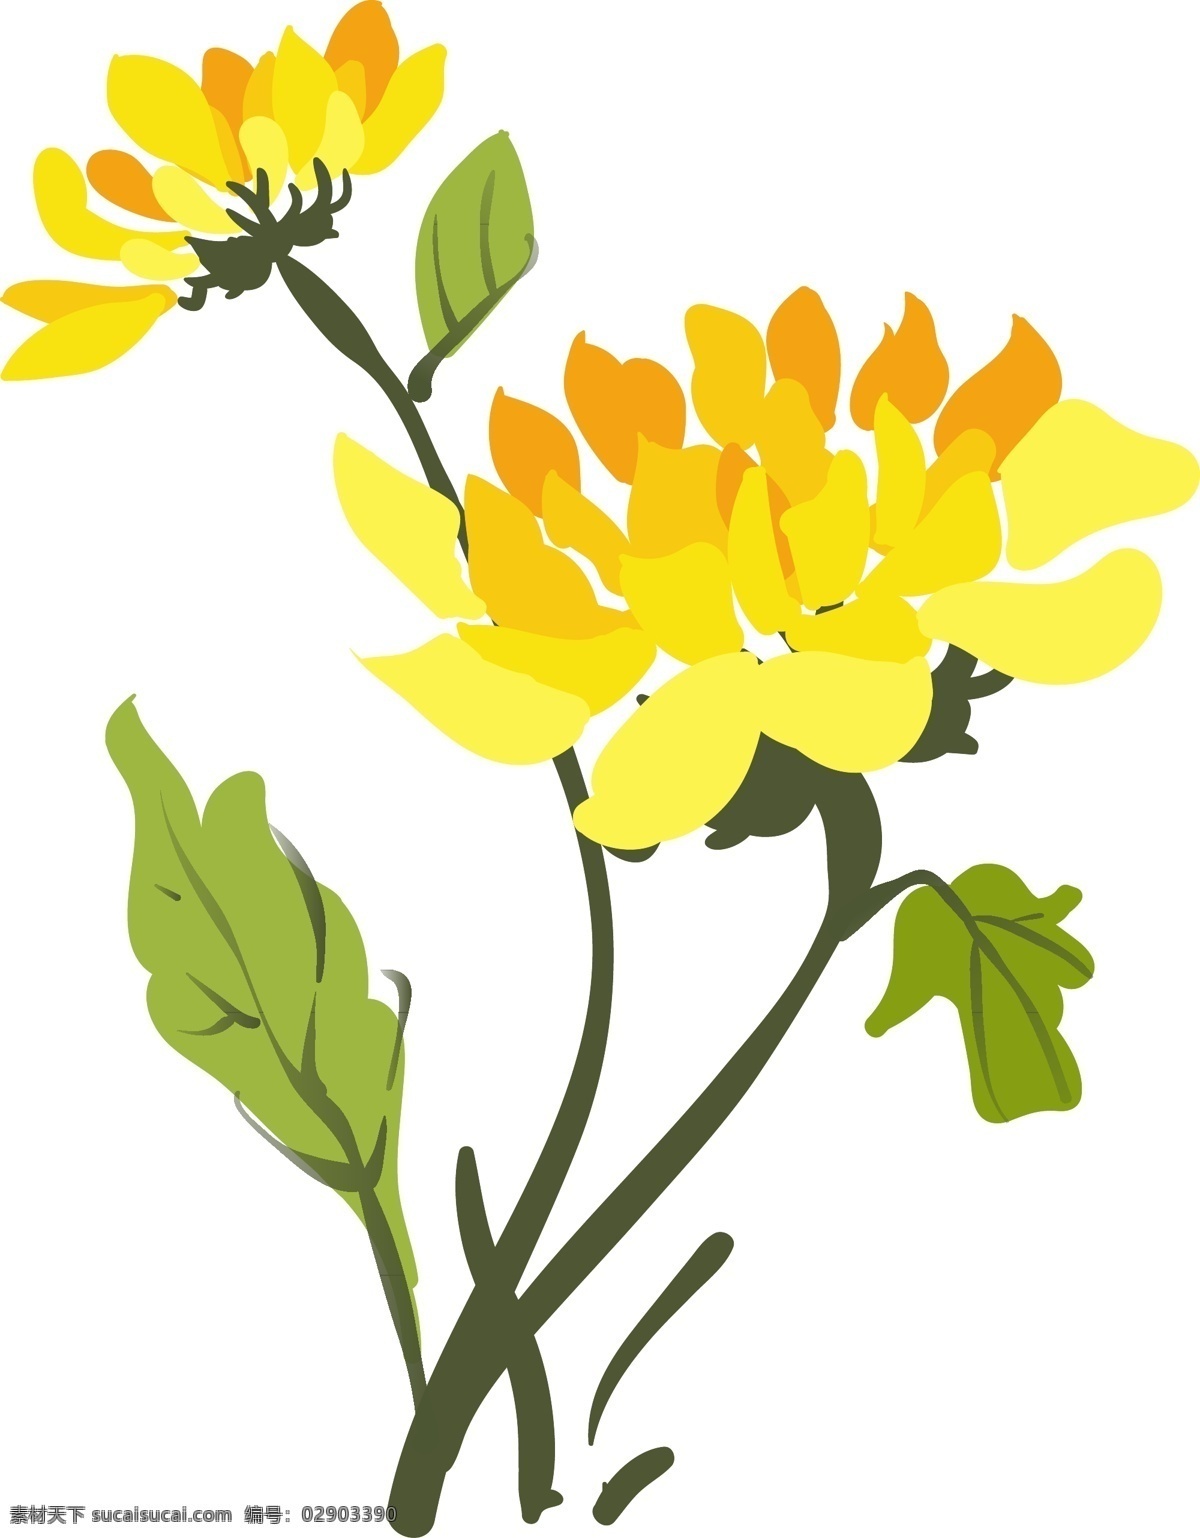 手绘 黄色 菊花 插画 美丽的鲜花 黄色的菊花 漂亮的鲜花 创意鲜花插画 妖艳的花朵 手绘鲜花插画